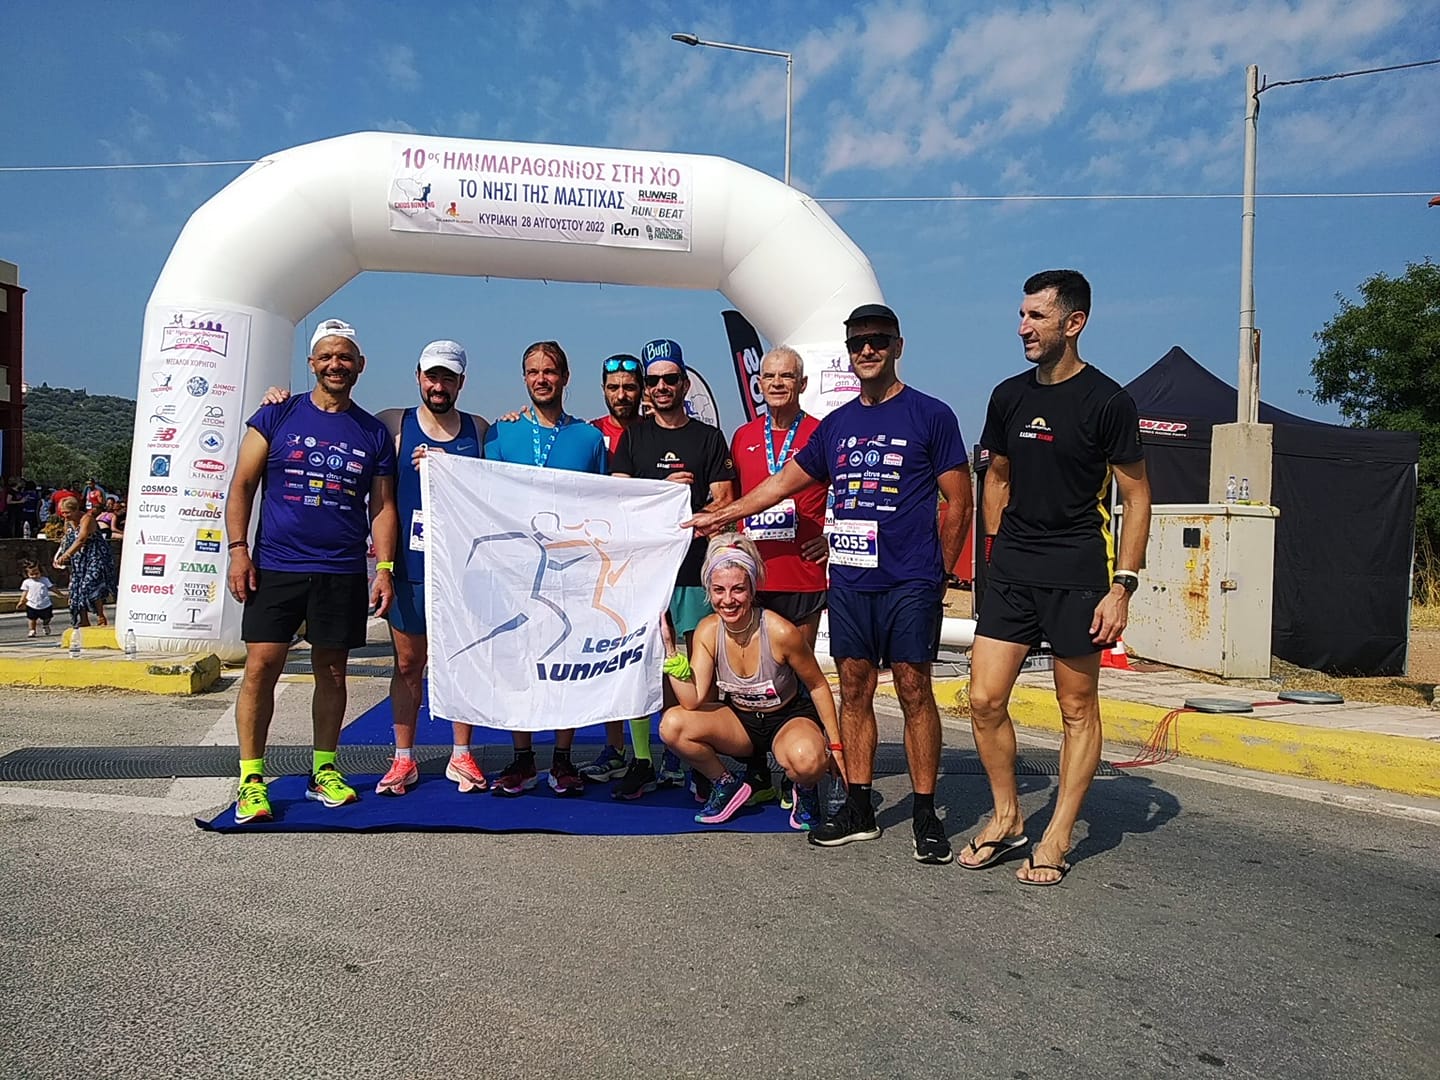 Συμμετοχή με διακρίσεις από τους Lesvos Runners στον Ημιμαραθώνιο Χίου